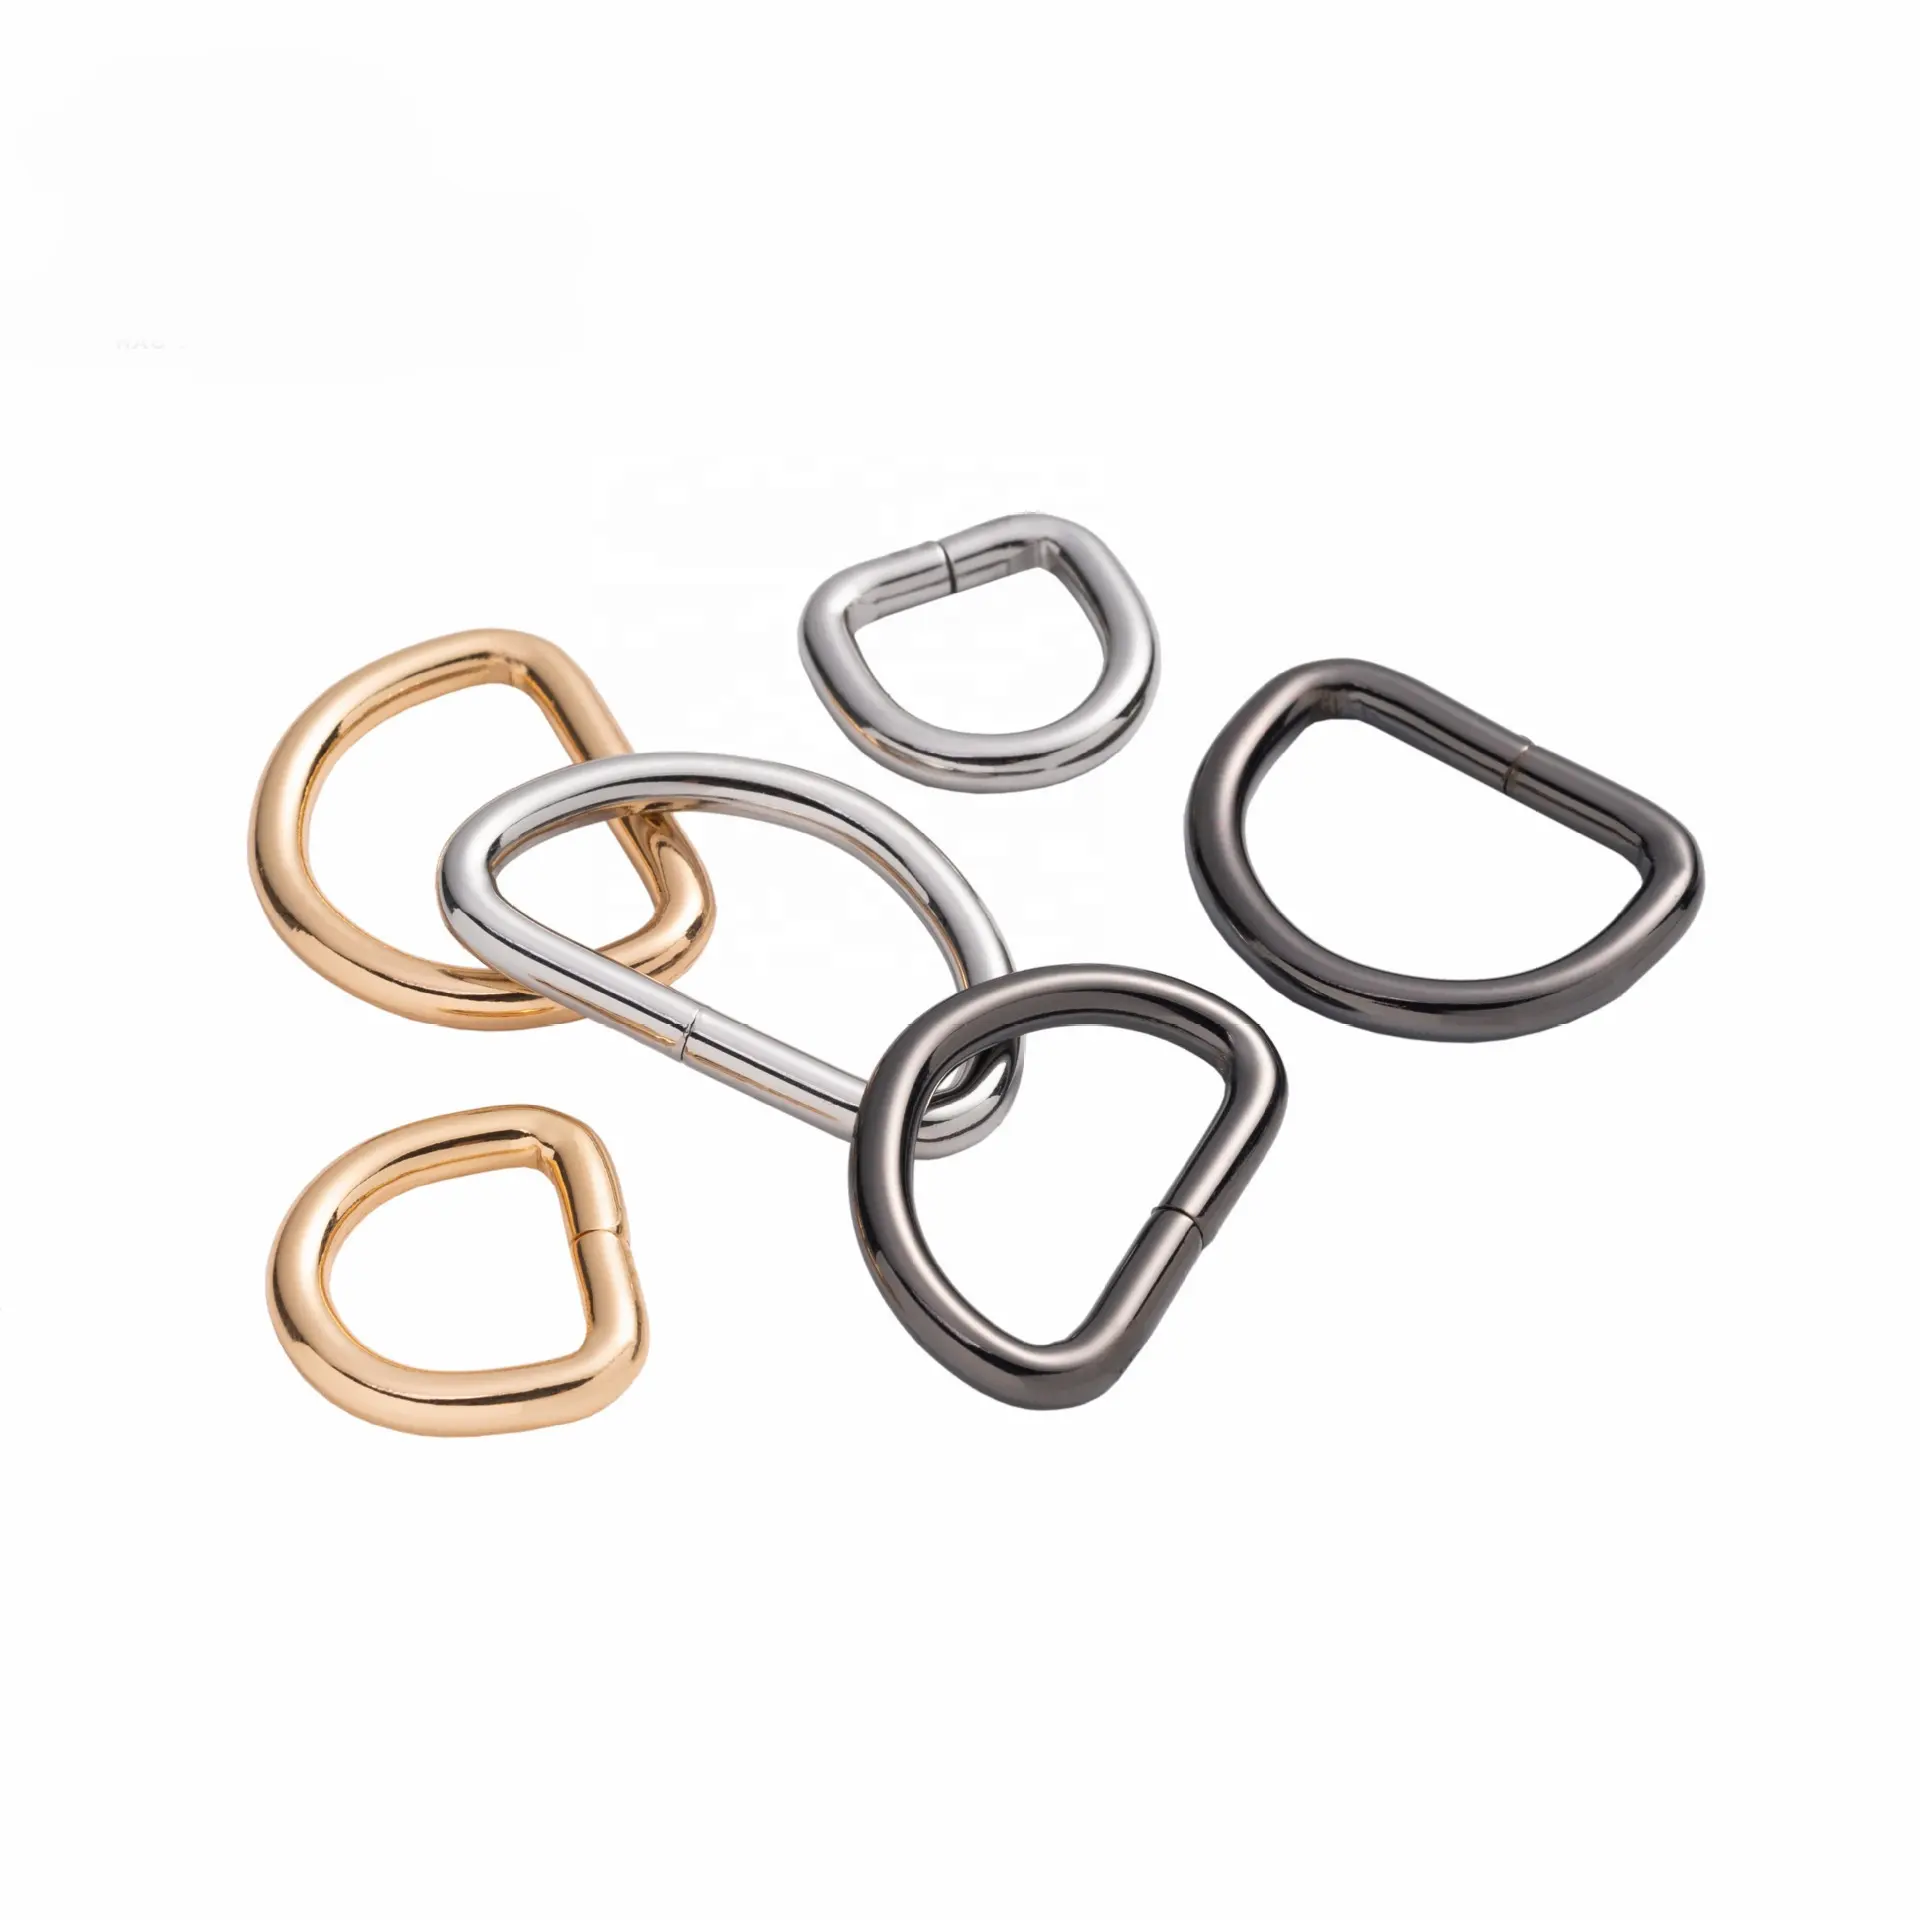 Fermoir D anneaux accessoires de sac à main sangles de sac boucle métallique anneau D